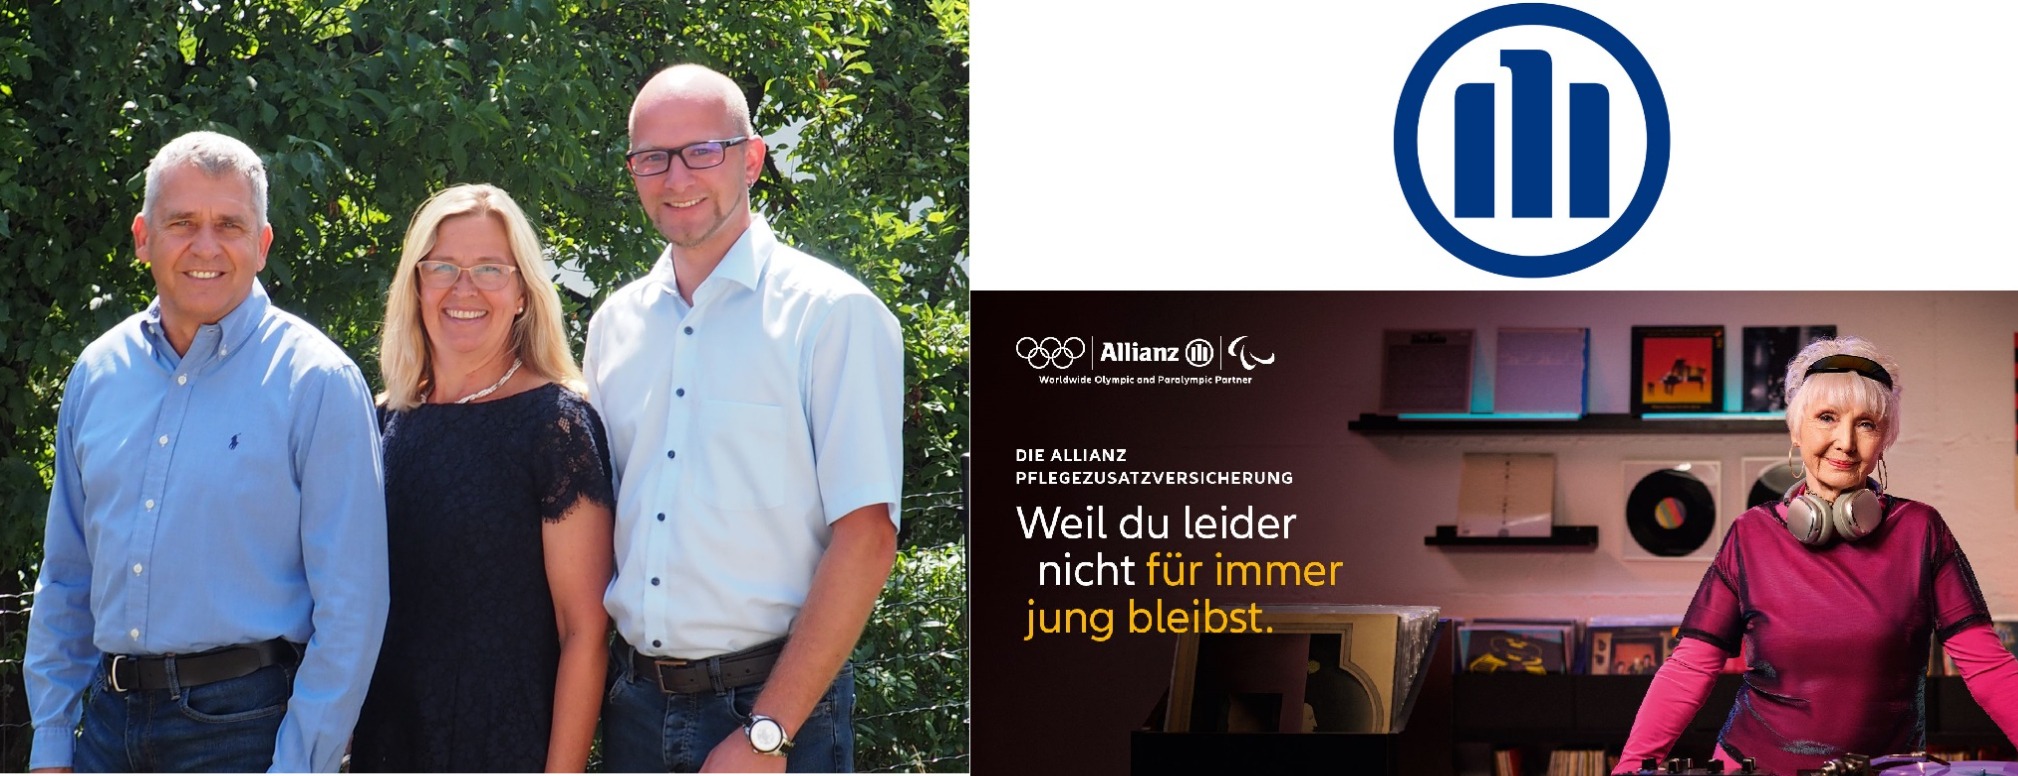 Allianz Versicherung Thomas Fischer Mitterfels - Team Allianz Thomas Fischer